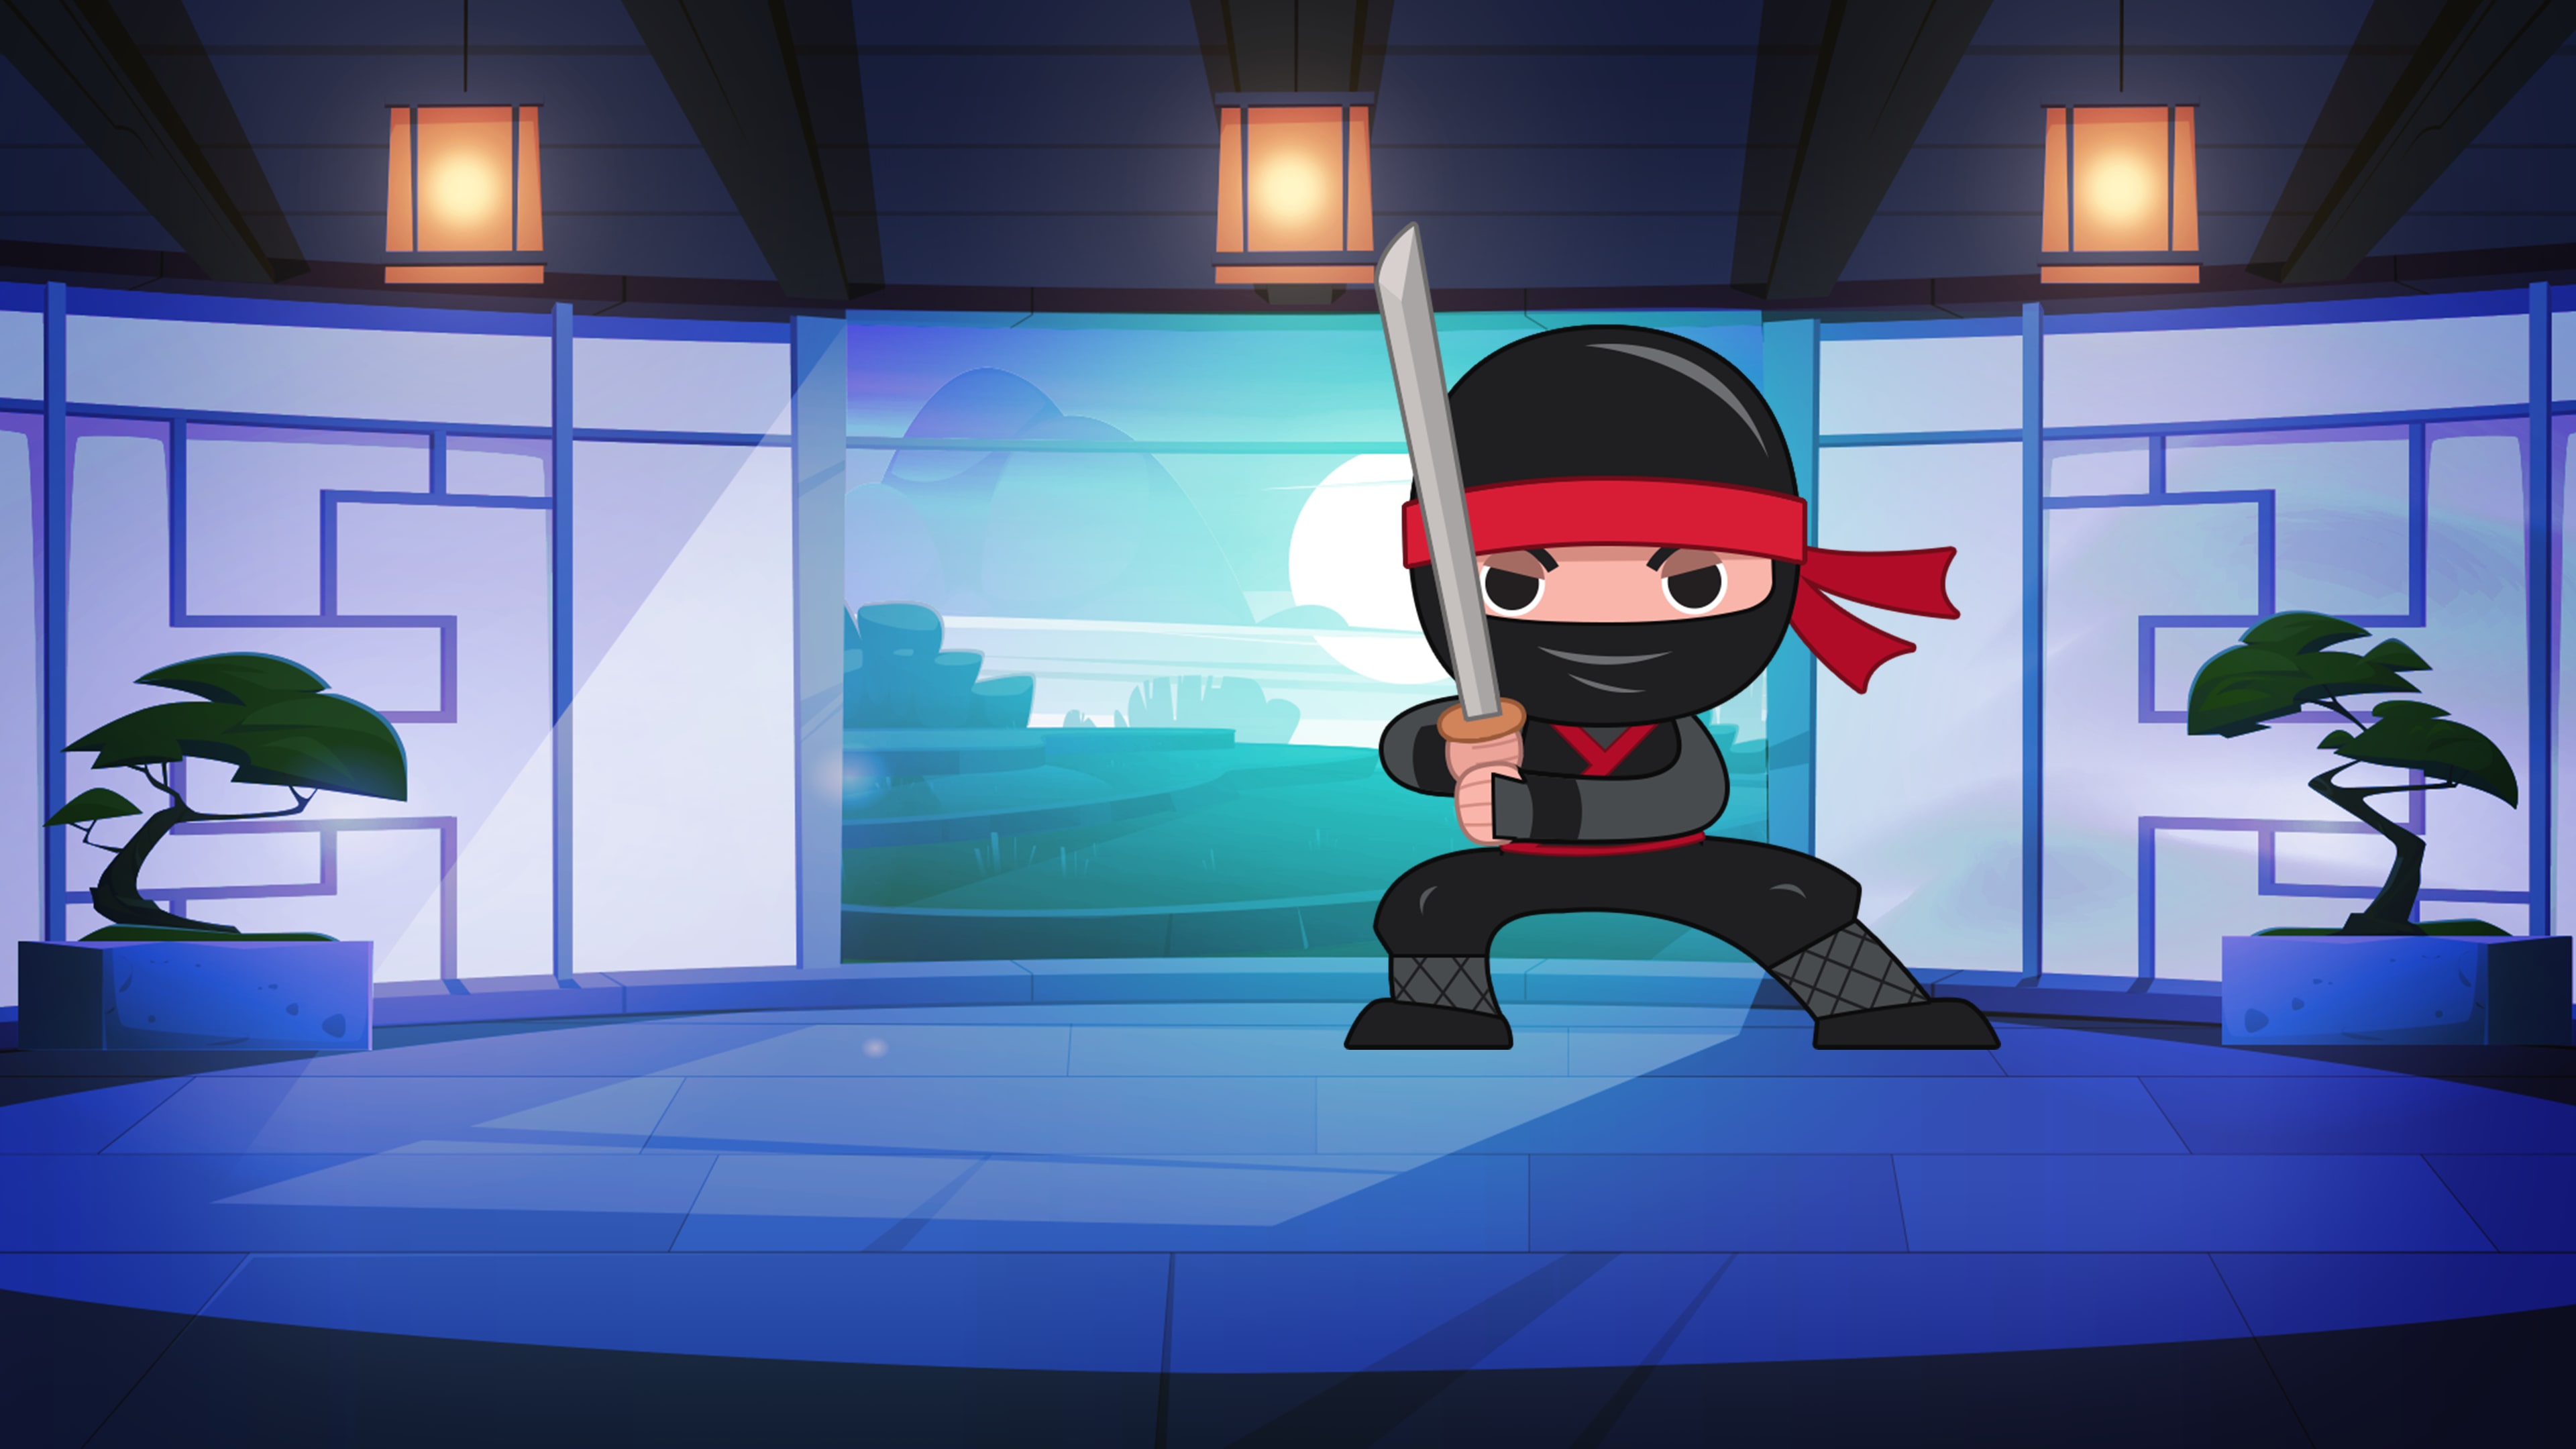 Bộ Biểu Tượng Cảm Xúc Ninja Avatar Ninja Thể Hiện Những Cảm Xúc Khác Nhau  Hạnh Phúc Mỉm Cười Buồn Khóc Tức Giận Yêu Ngạc Nhiên Buồn Bã Cười Và Các  Biểu